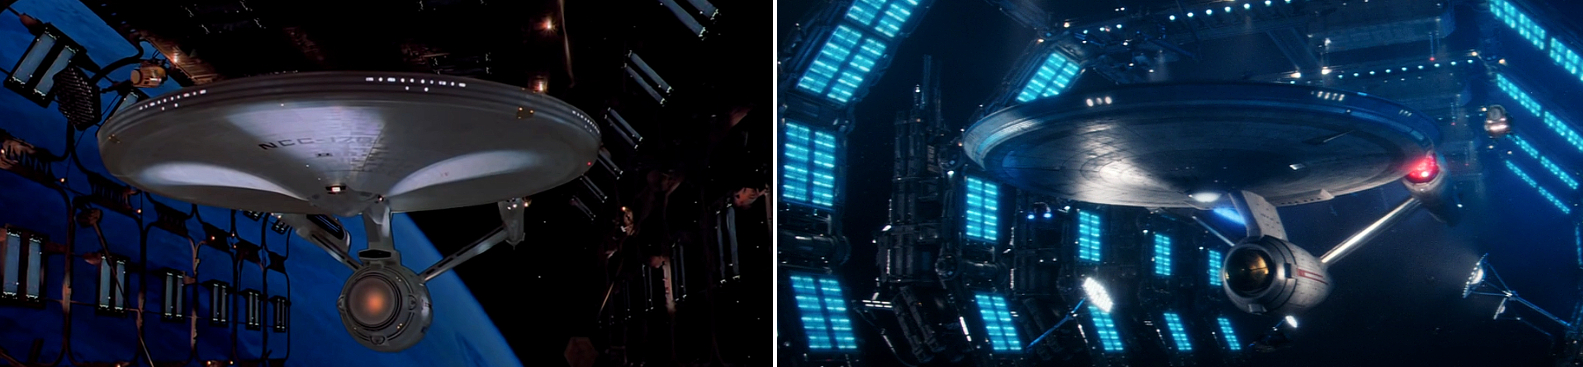 Die U.S.S. Enterprise NCC-1701 im Raumdock, links 2271 in "Star Trek: The Motion Picture" und rechts 2257 in "Such Sweet Sorrow" (Szenenfotos: Paramount Pictures, CBS).